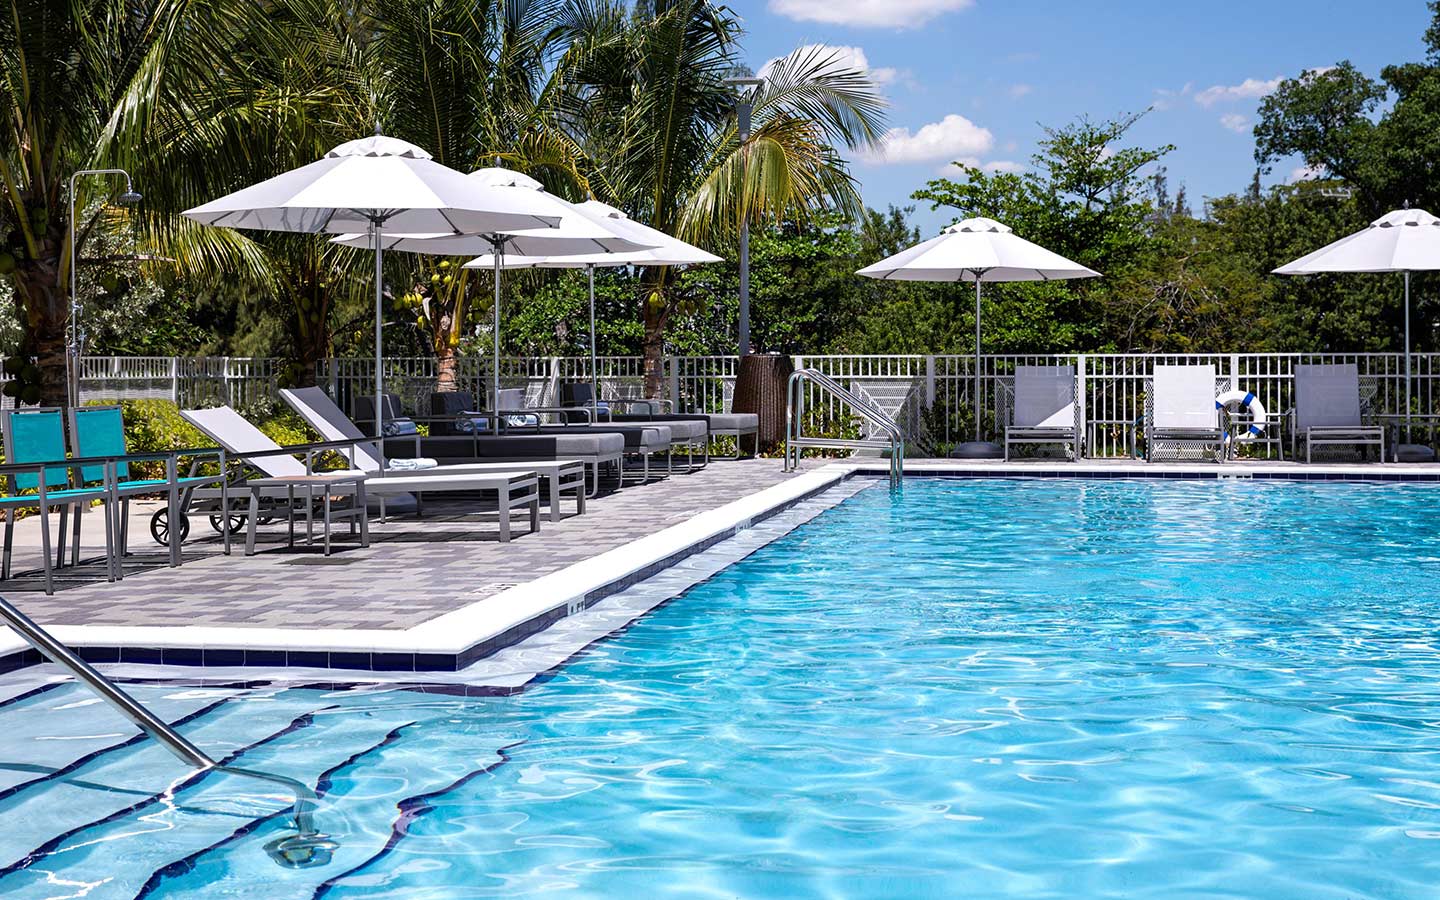 Área de piscina no aeroporto de Miami Even Hotel 